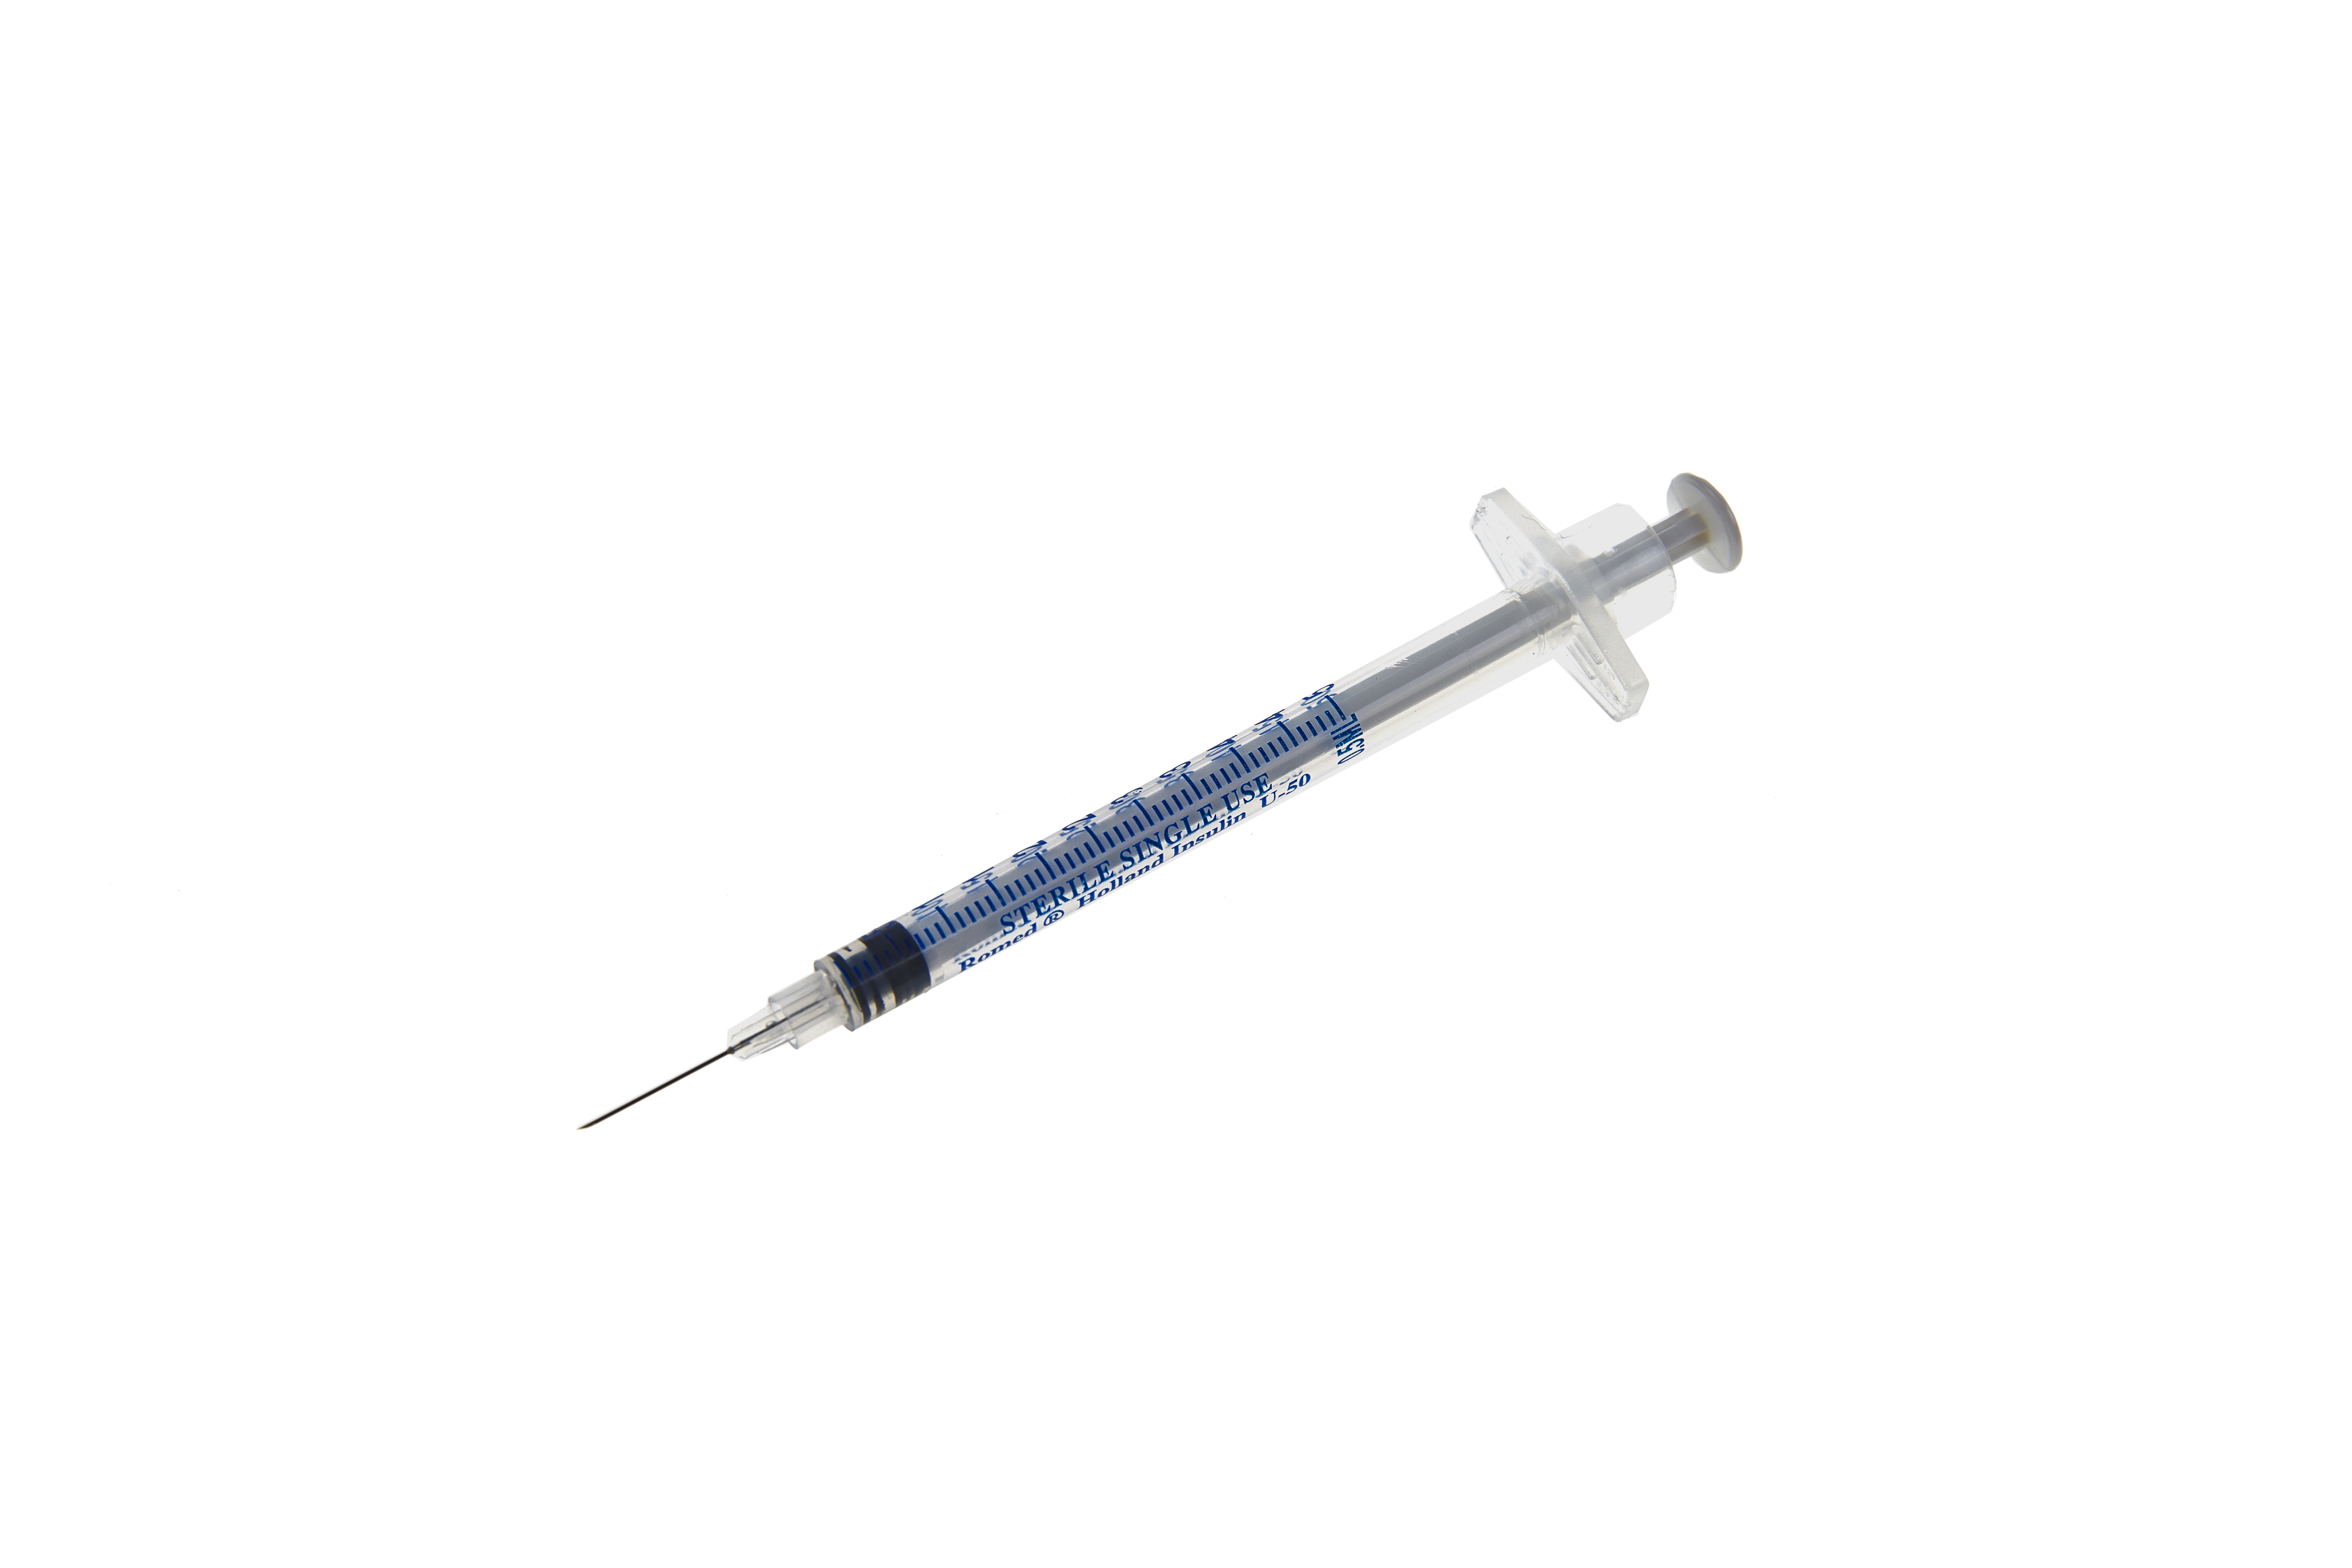 3IS-0.5ML-50U Romed insulinespuiten 0,5 ml met geïntegreerde naald, 50 stuks, steriel per stuk, 100 stuks in een binnendoos, 32 x 100 stuks = 3.200 stuks in een doos.